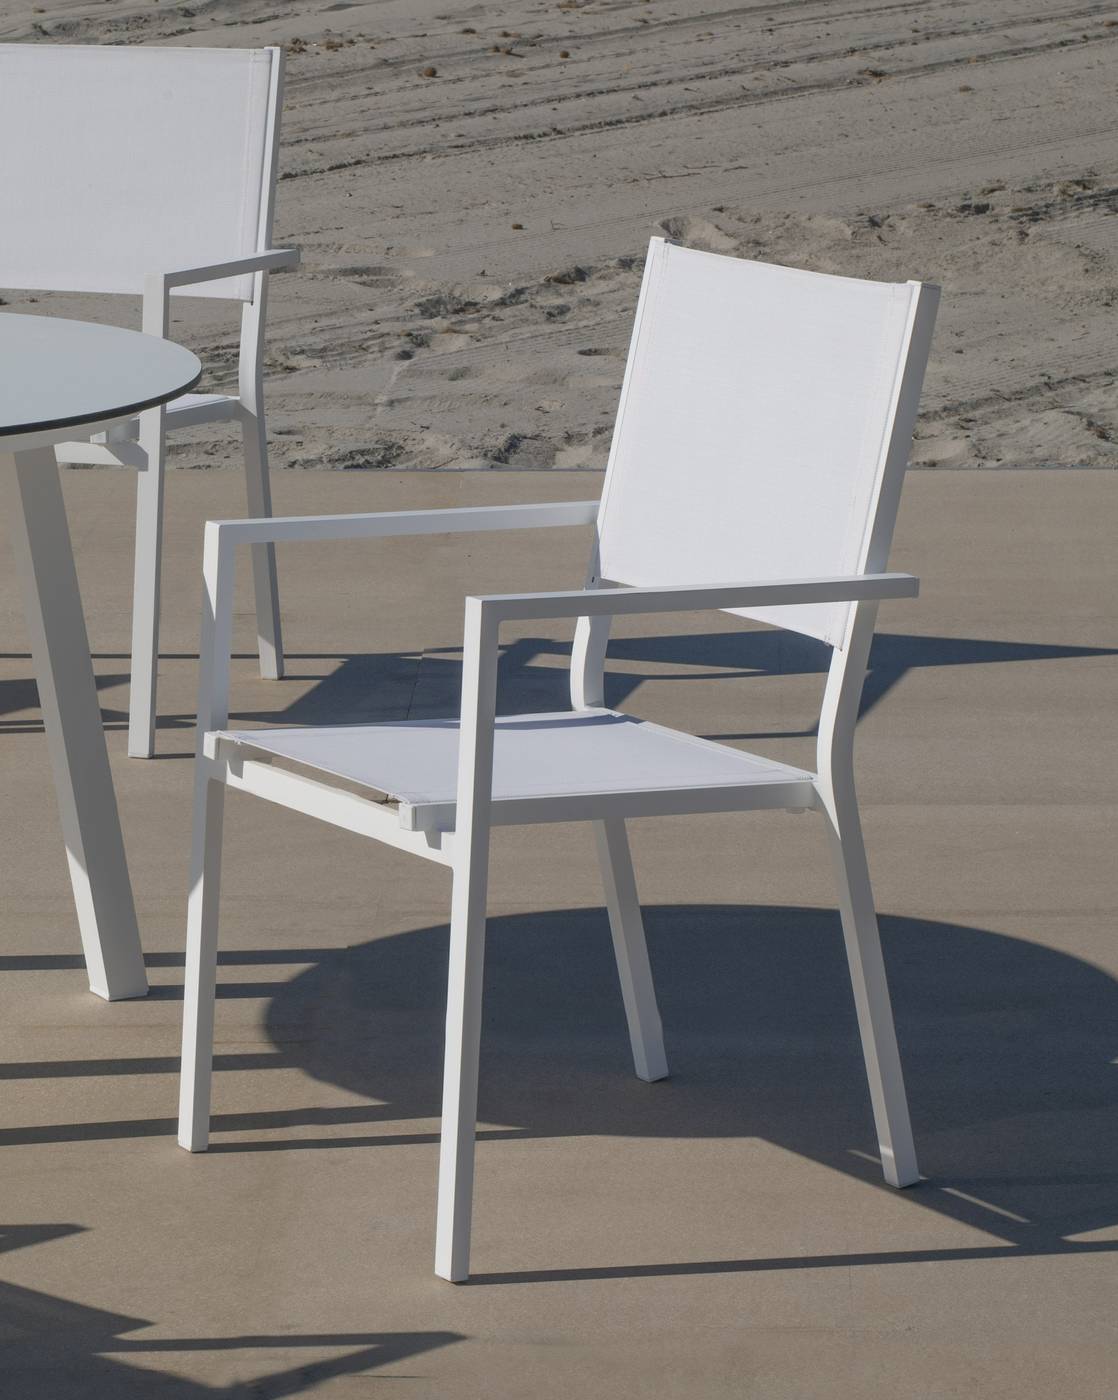 Set California-HPL Córcega - Conjunto de aluminio para jardín: Mesa redonda con tablero HPL de 100 cm + 4 sillones de textilen. Colores: blanco y antracita.